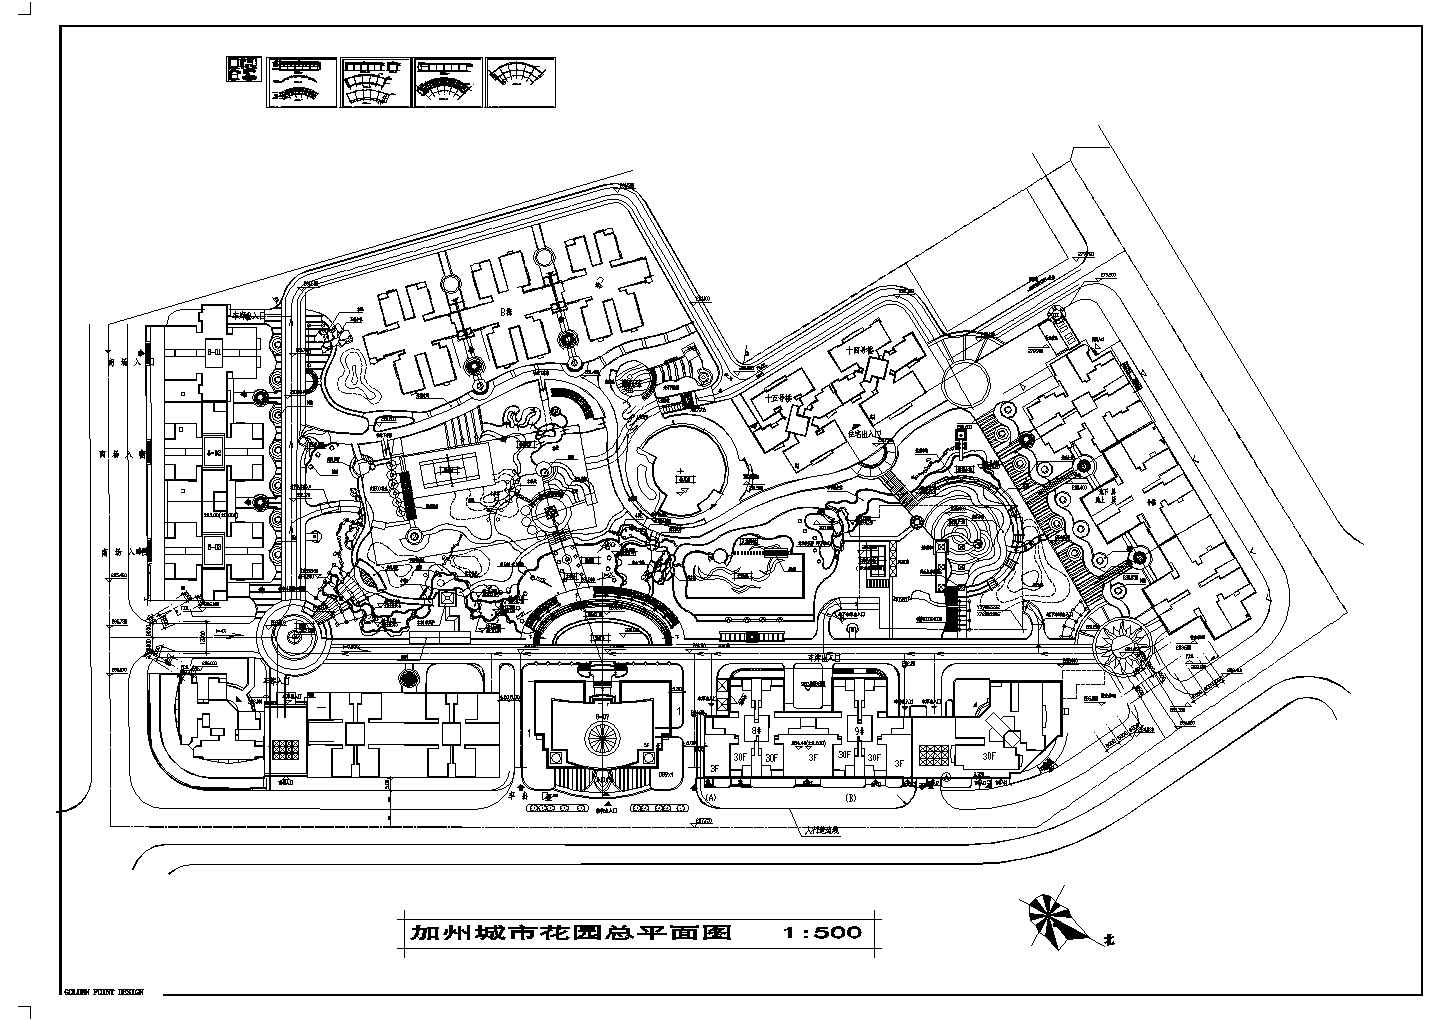 加洲城市花园小区建筑总规划方案修改图